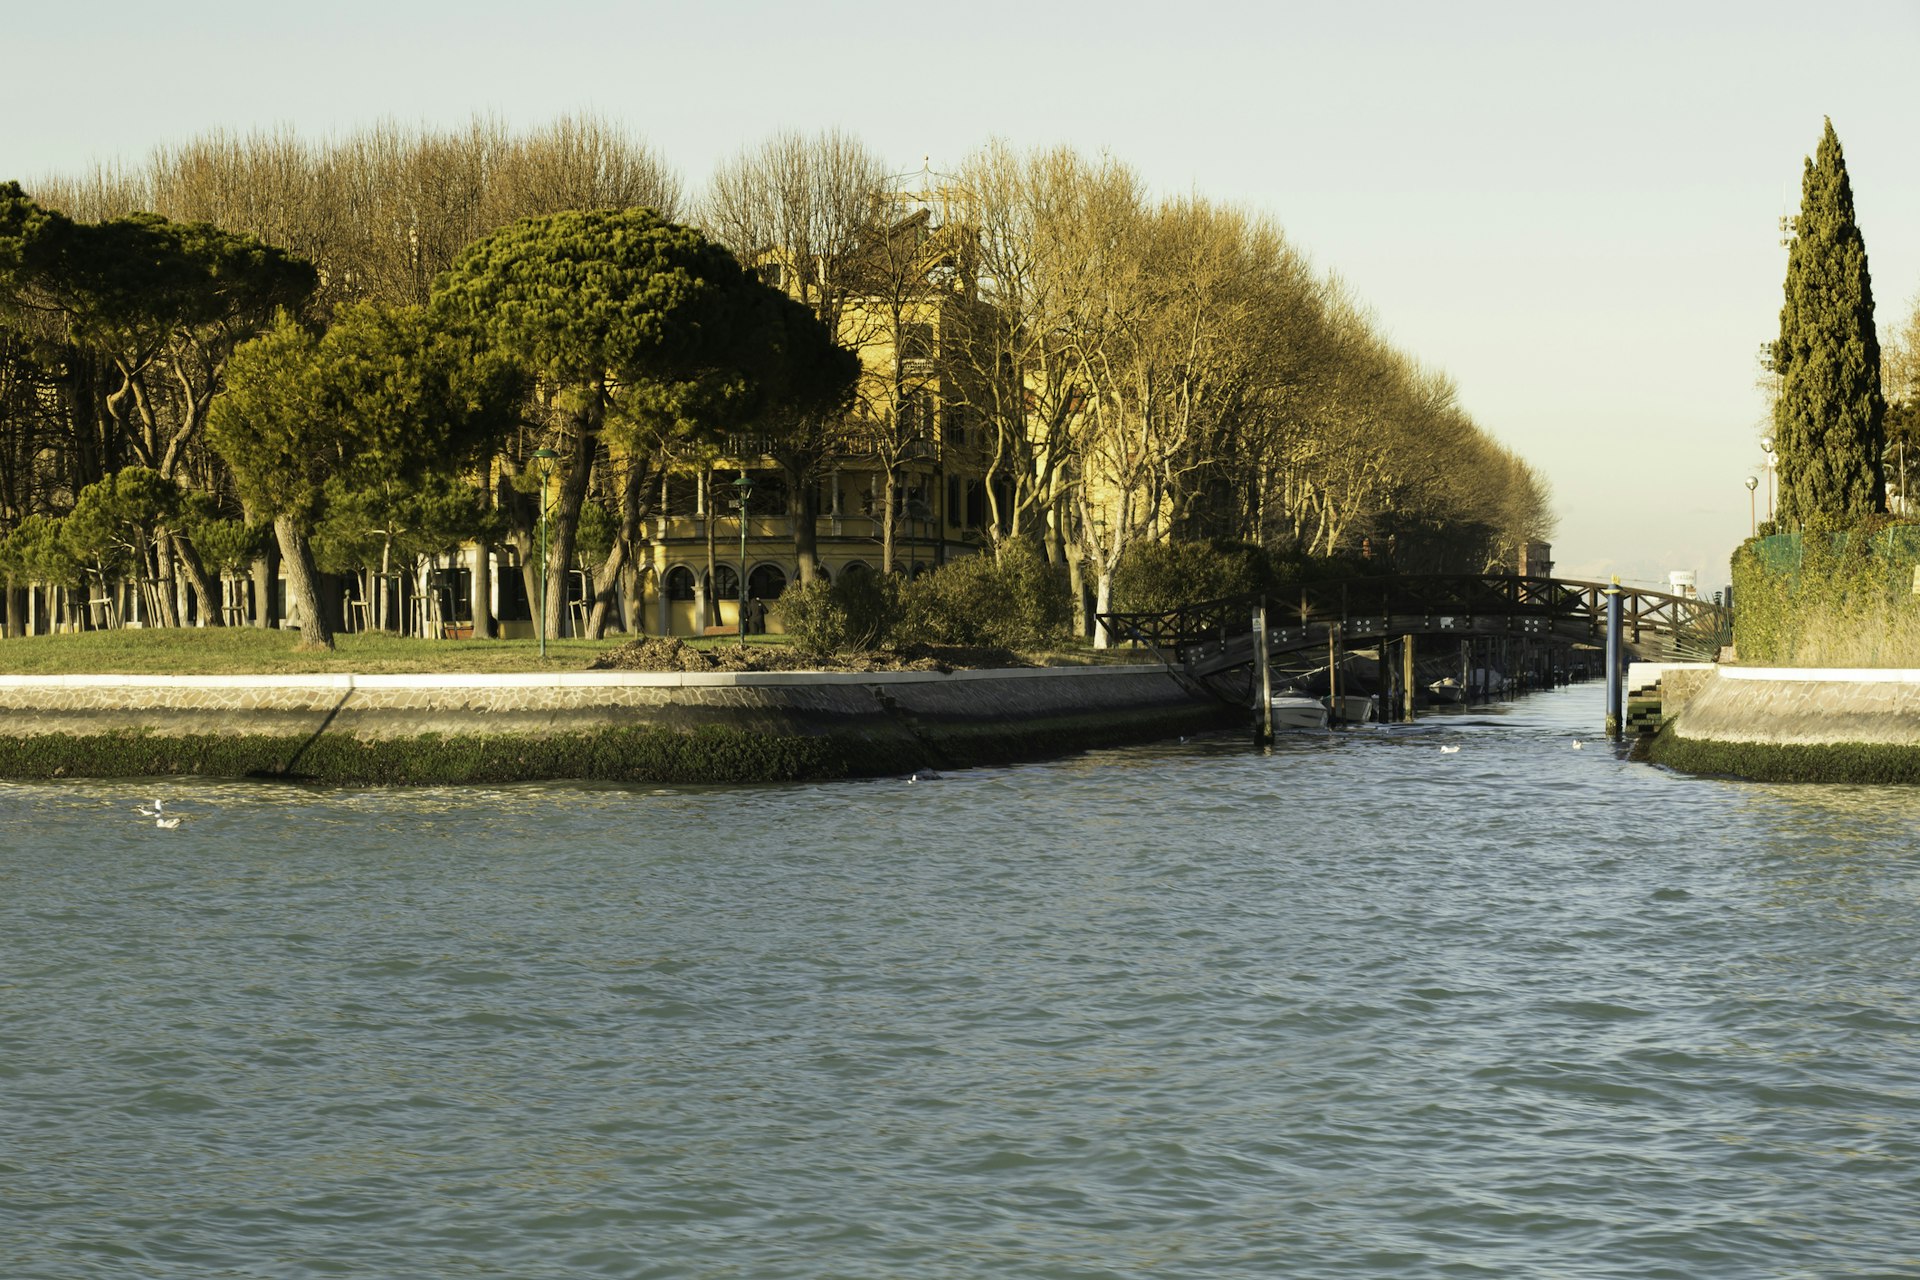 coastal Parco delle Rimembranze, Venice, Italy